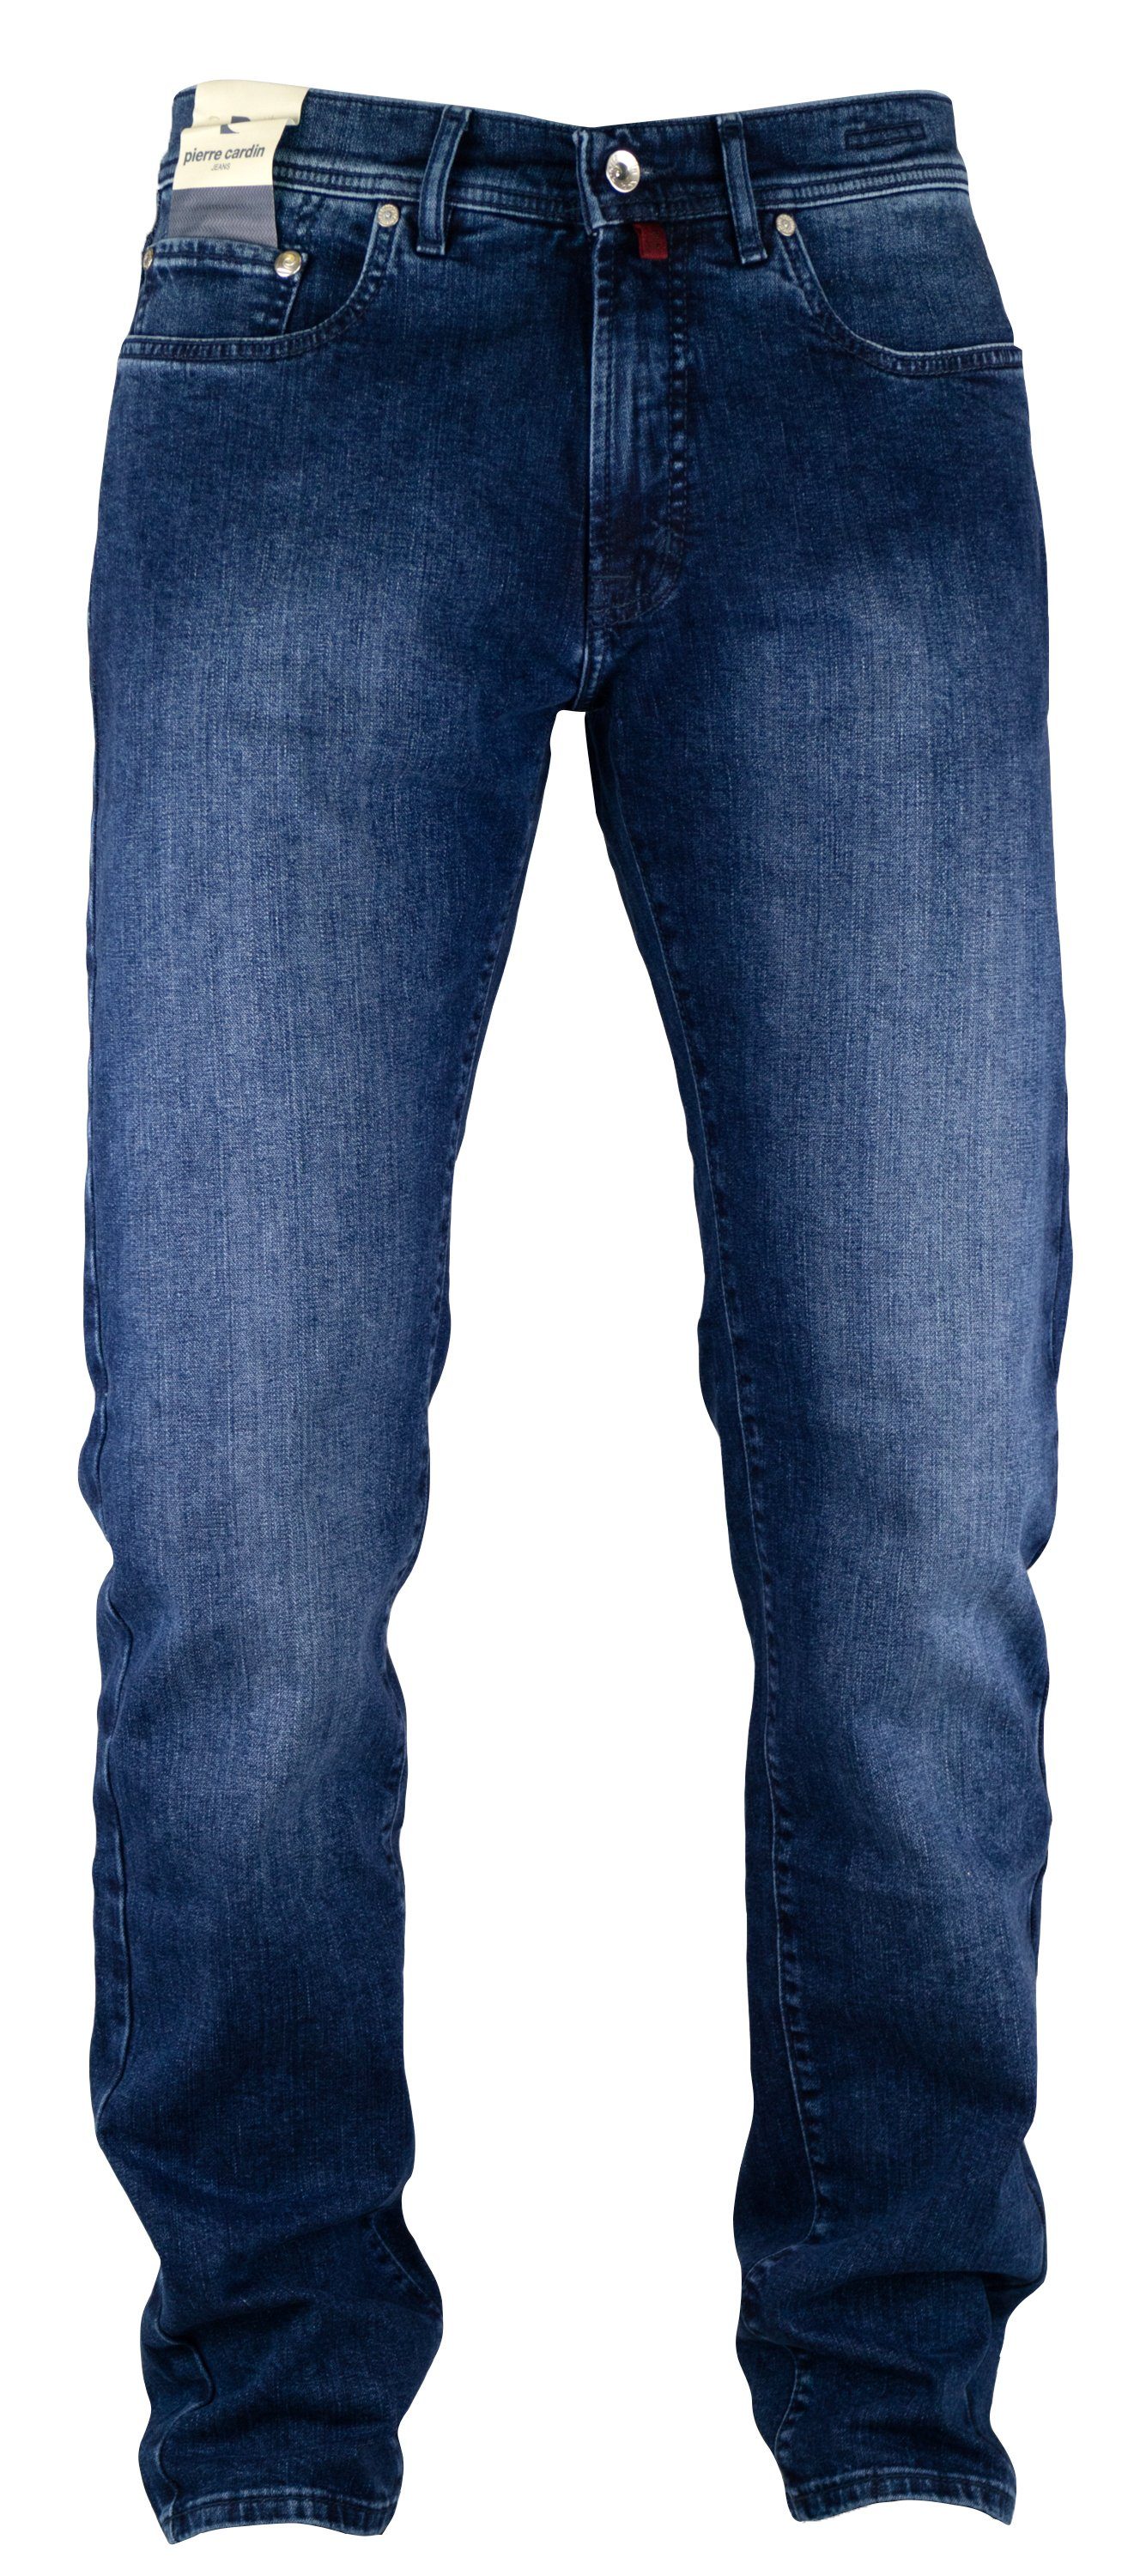 Herren Jeans Pierre Cardin 5-Pocket-Jeans PIERRE CARDIN LYON mid blue light used 3091 912.04